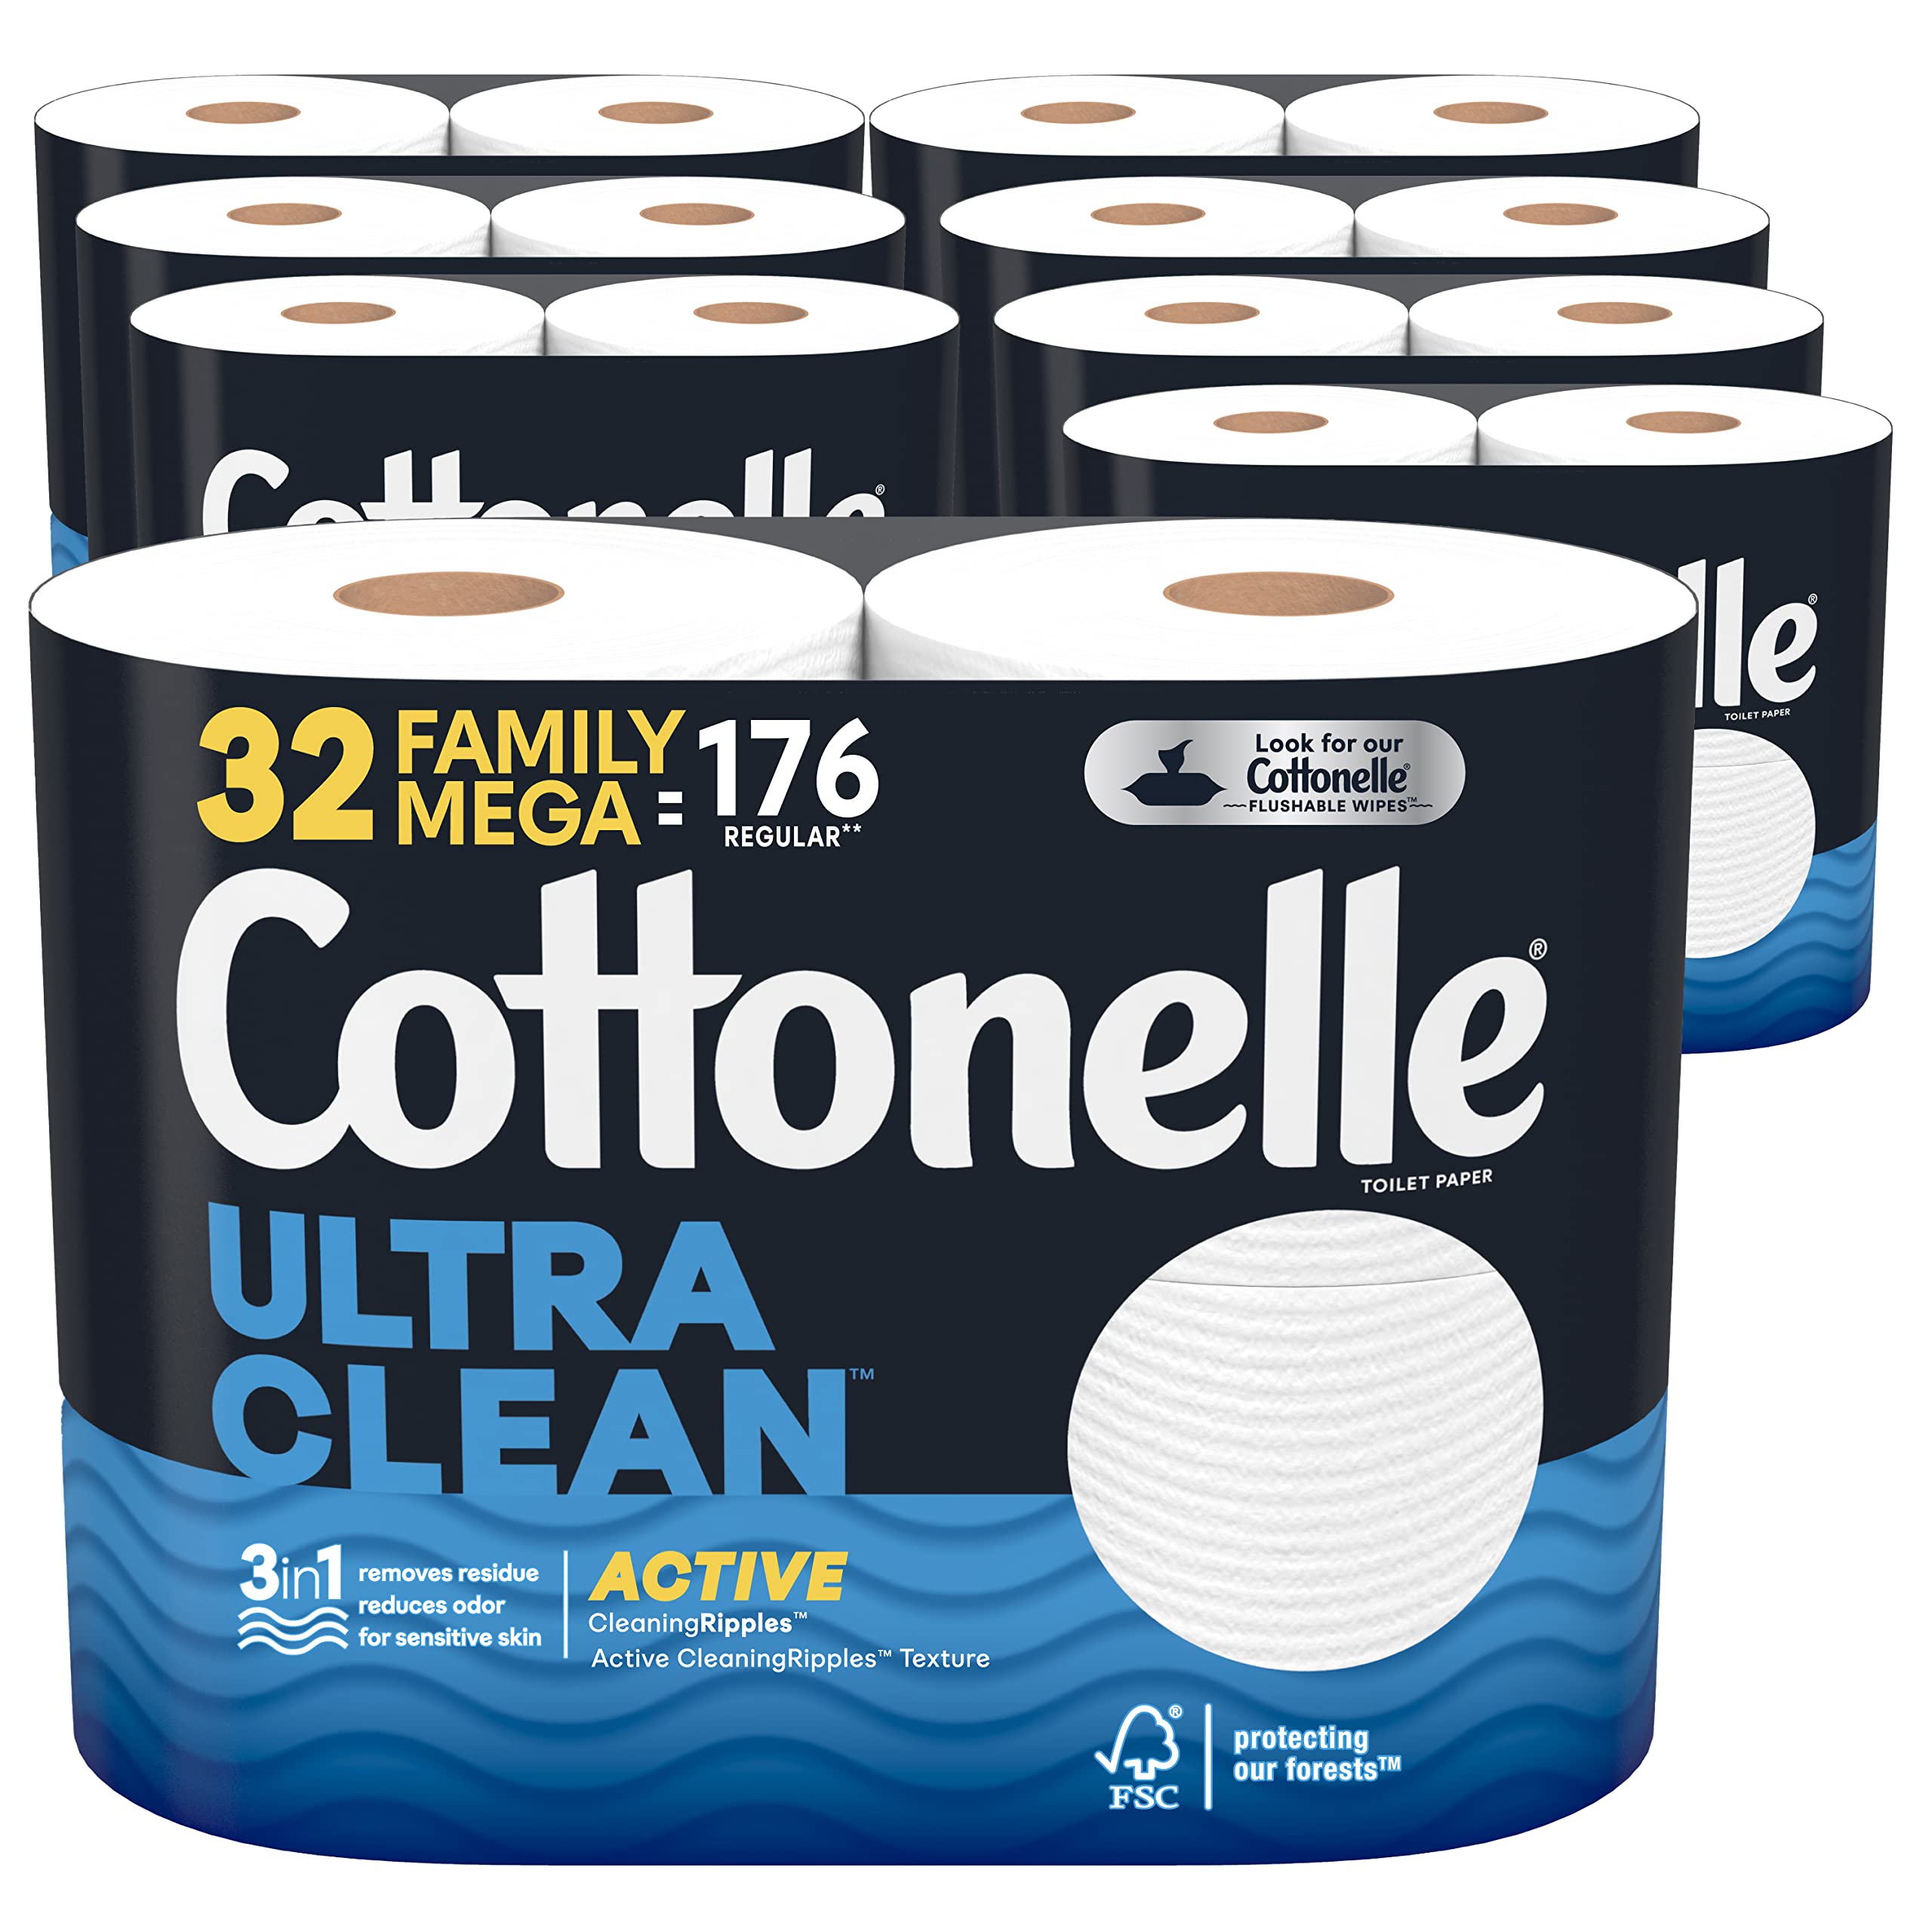 56ct Cottonelle Family Mega Rolls Toilet Paper (Clean) + $15 Amazon Credit $53.26